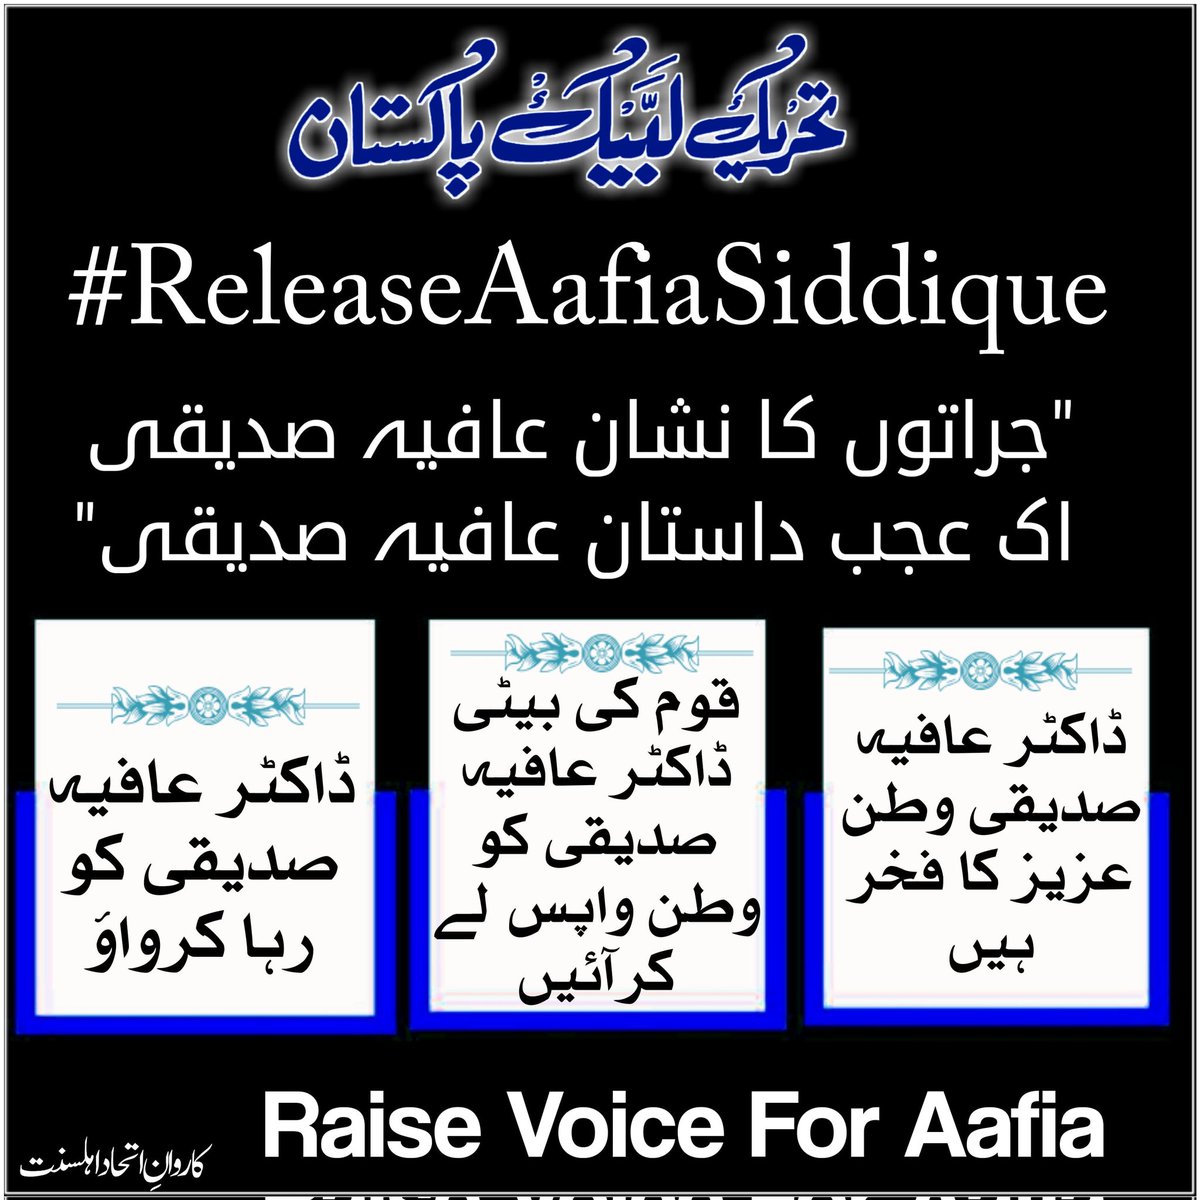 'جراتوں کا نشان عافیہ صدیقی.                                                       اک عجب داستان عافیہ صدیقی '💔

#ReleaseAafiaSiddique
#karwaaneIttehad_eAhle_Sunnat